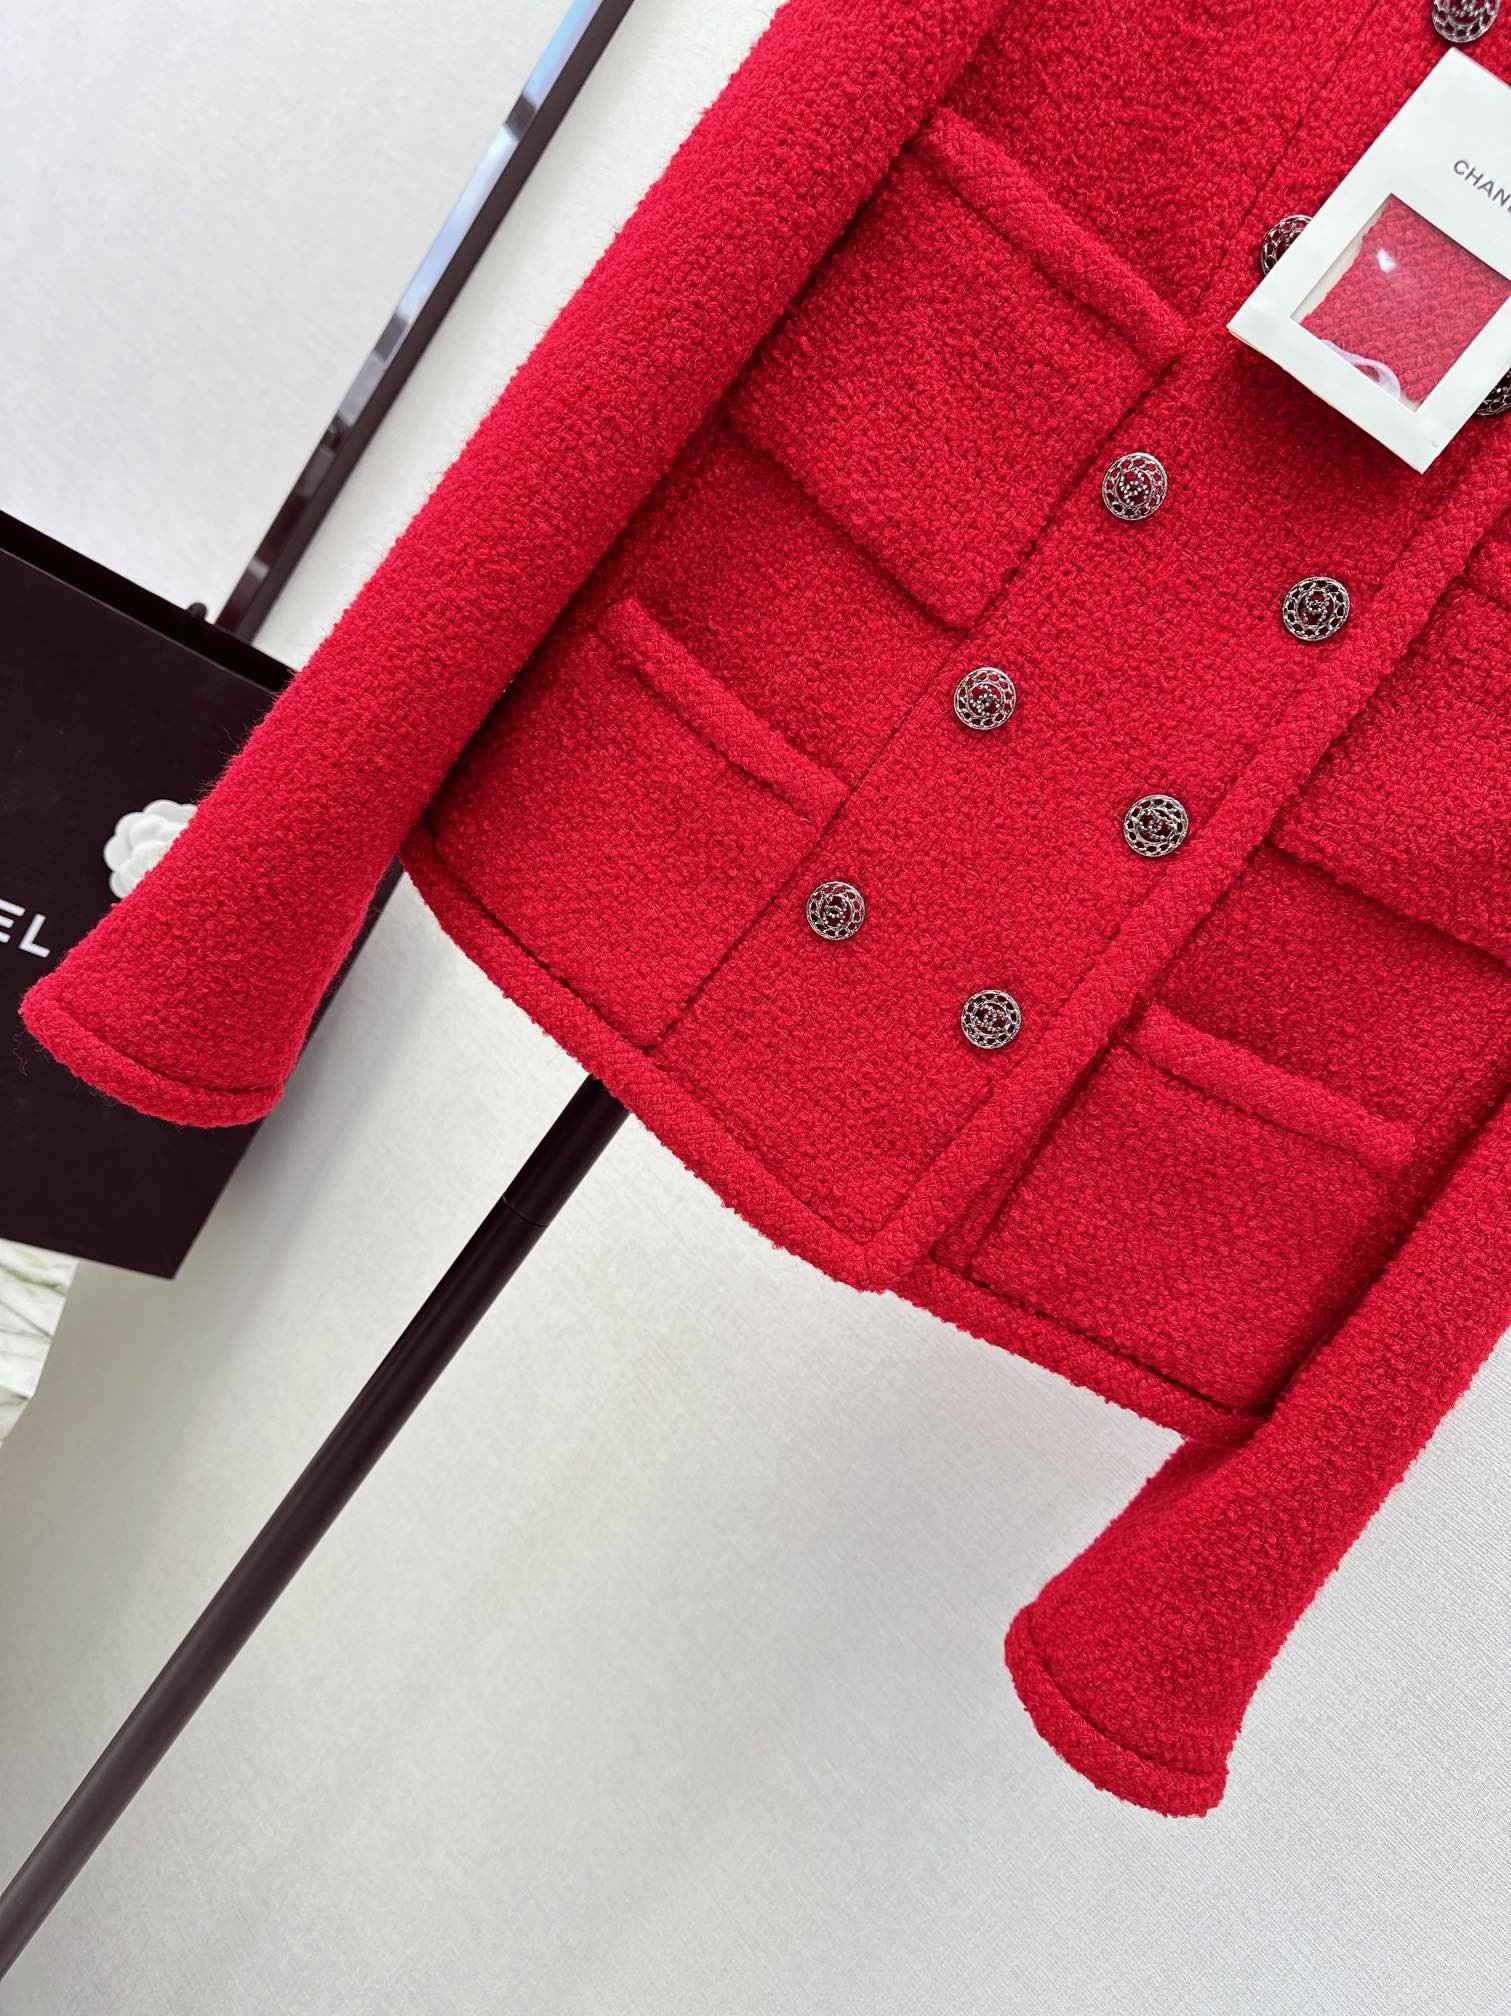 最美中国红C家24Ss早春最新款细节图实拍复古正红色圆领外套️绝对节日必备颜色巨显肤白轮廓型剪裁日常好驾